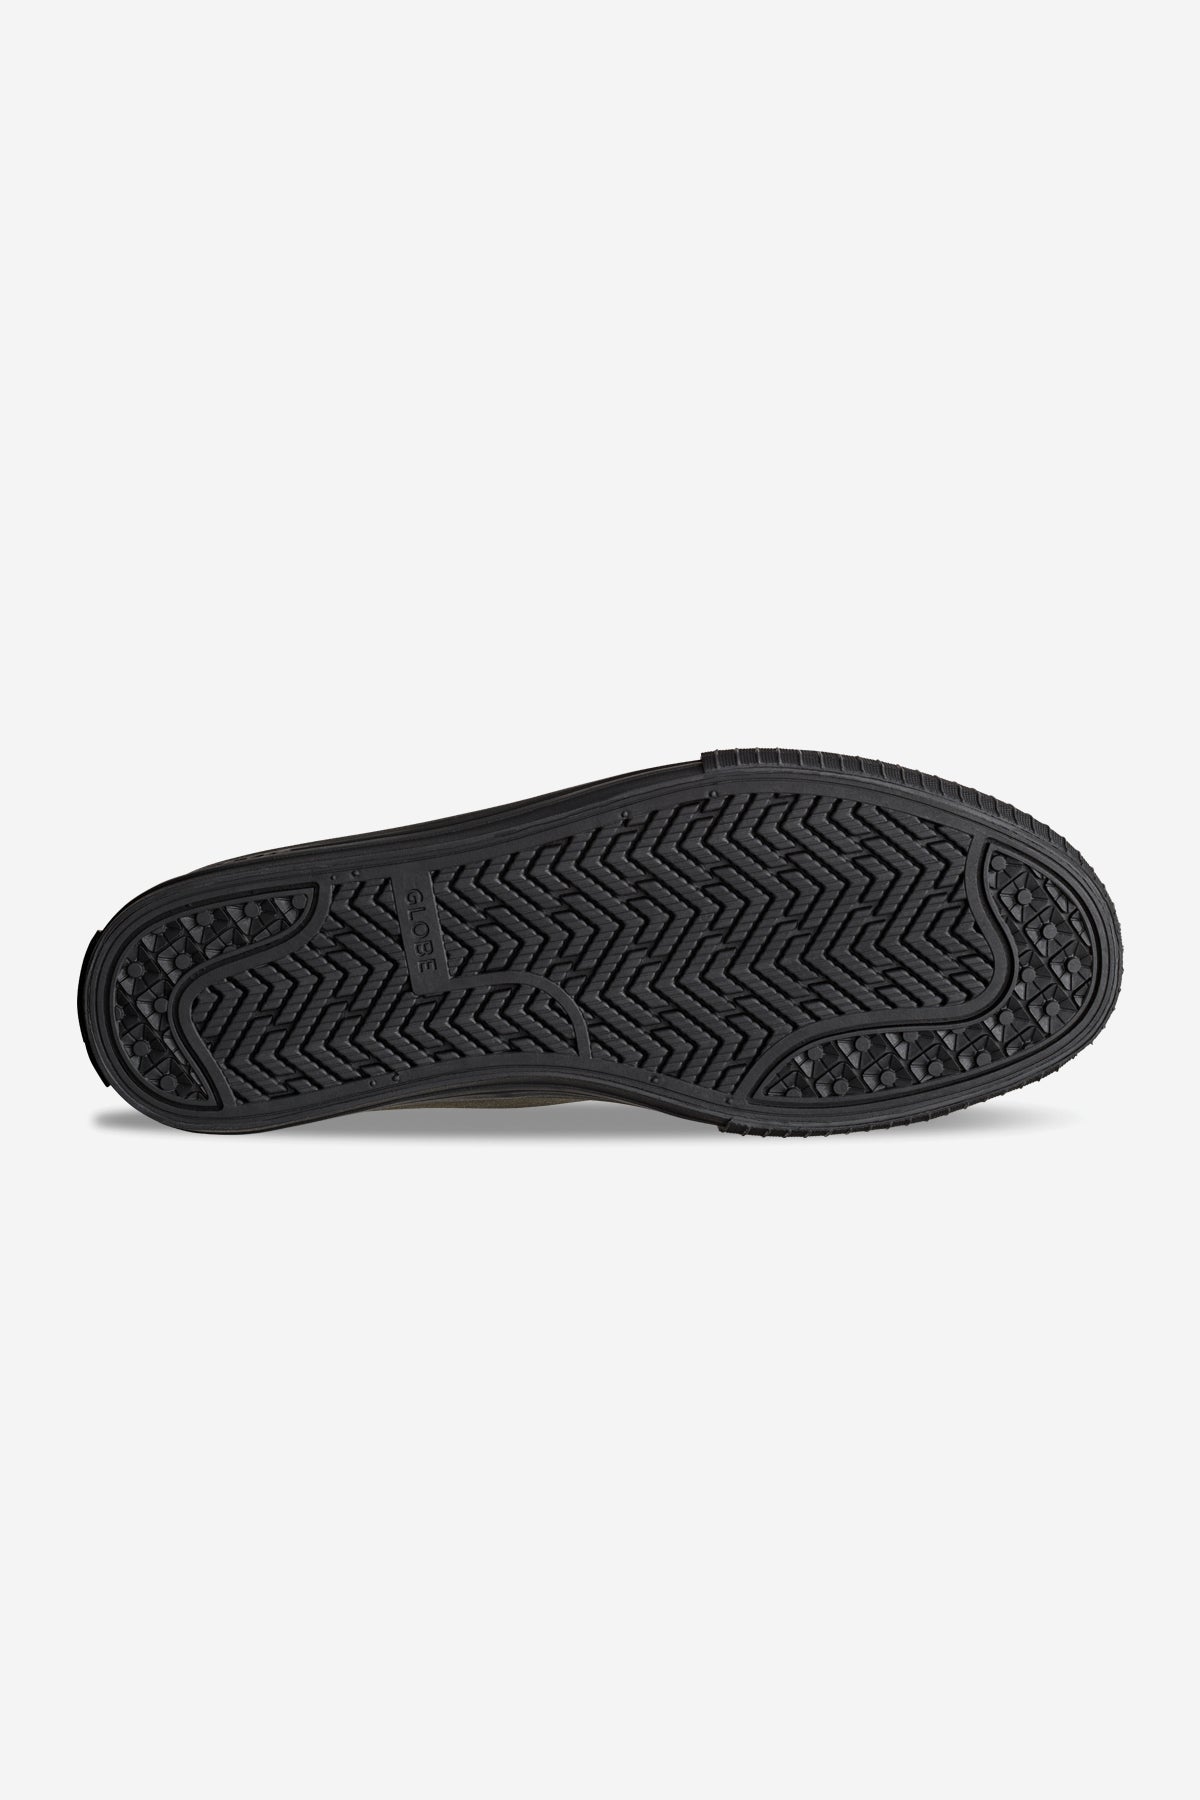 Globe - Gillette Mid - Dark Olive/Black - Skate Shoes